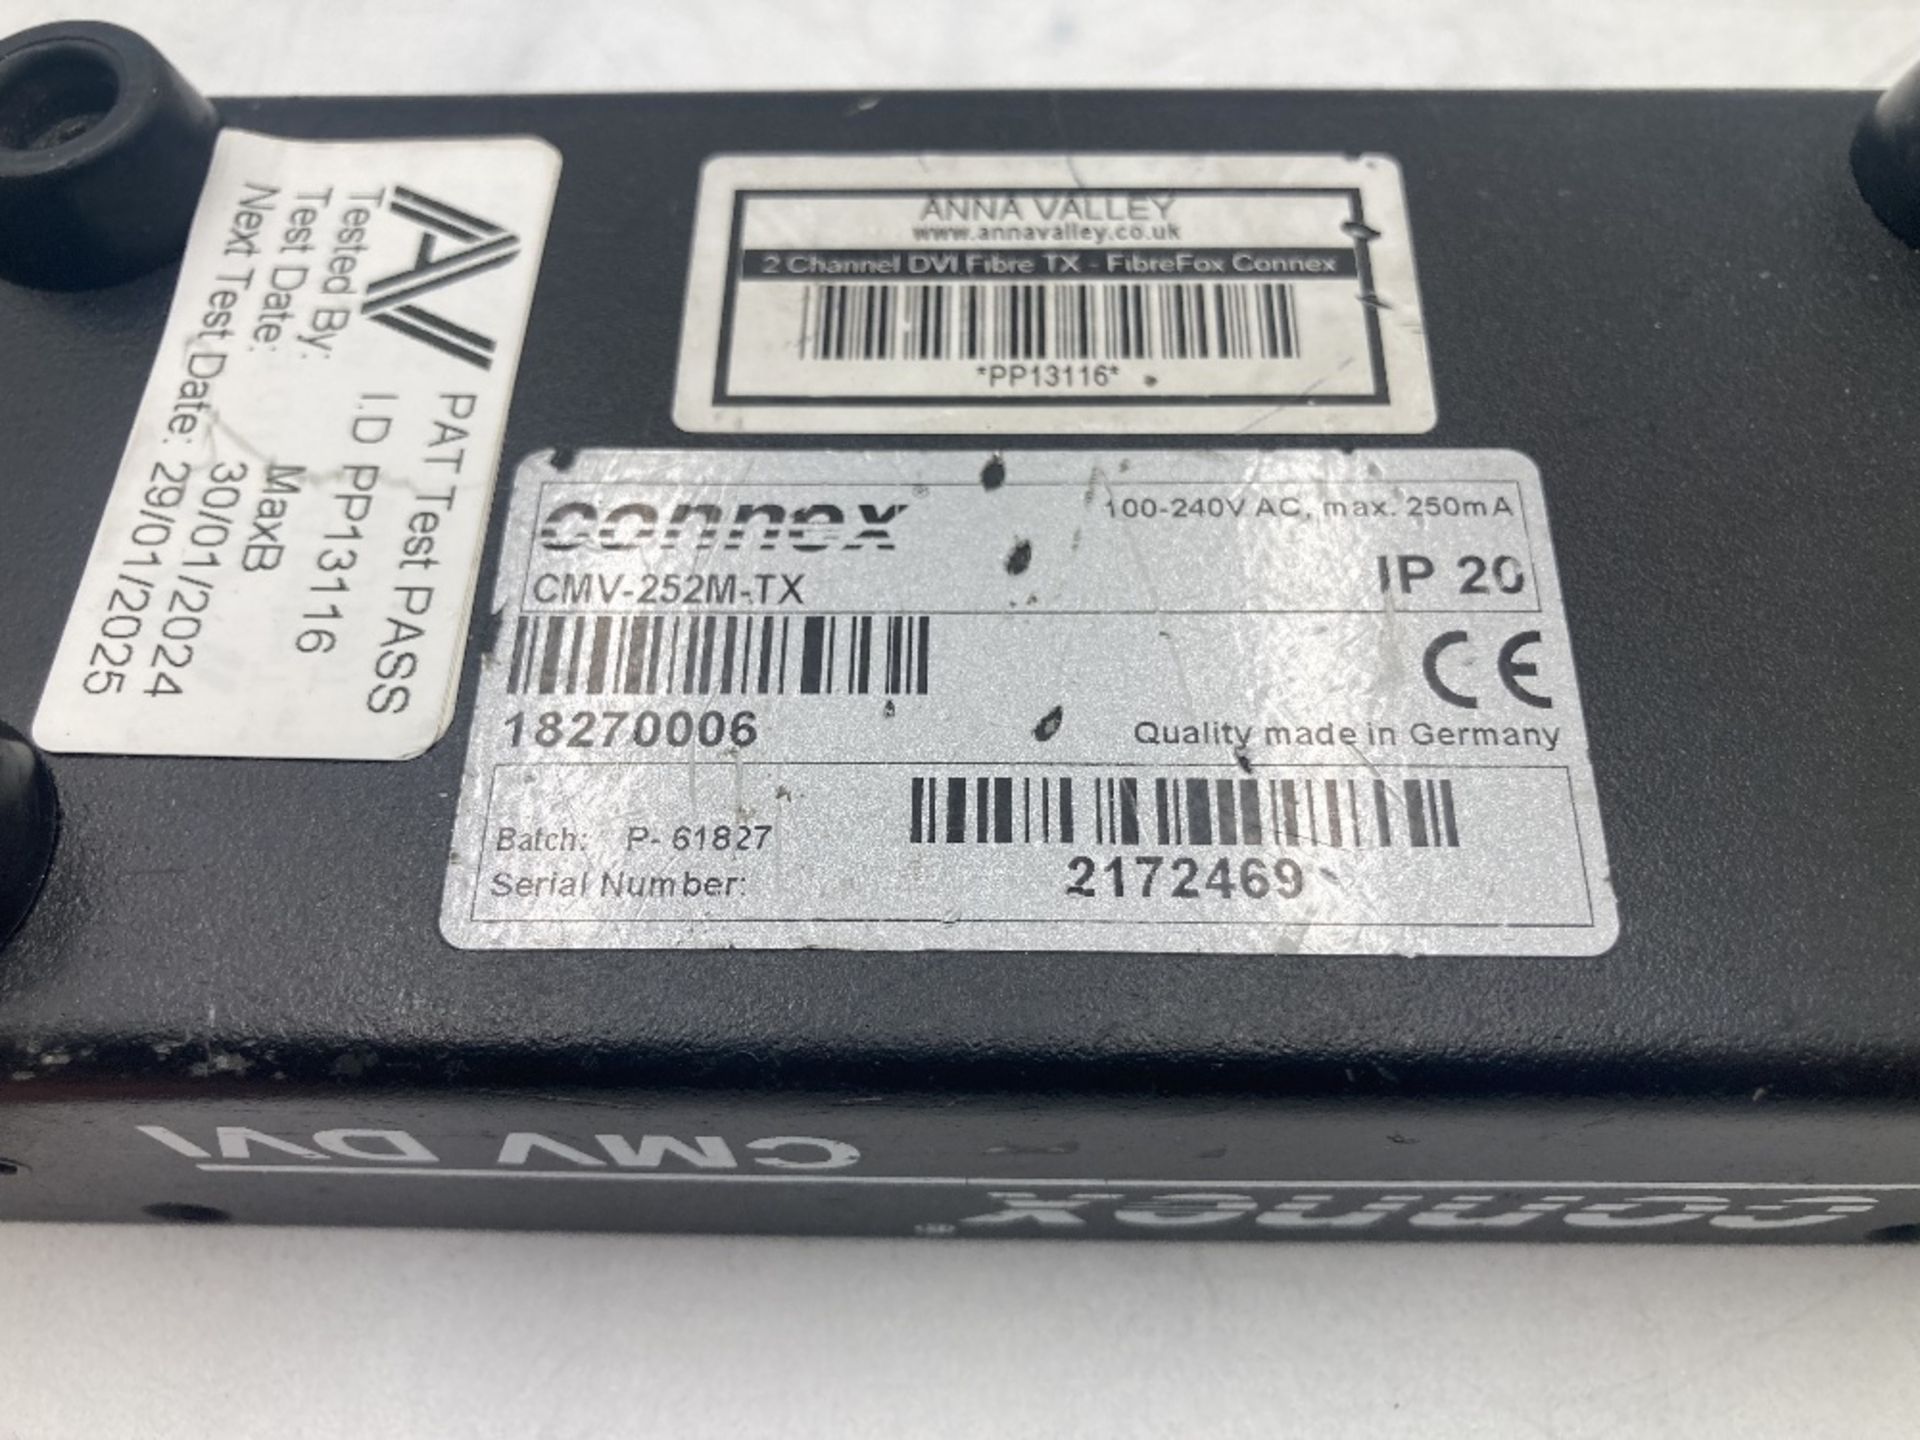 (3) Connex CMV 252-RX (EBC 1500) 2-Channel Receivers & Connex CMV DVI Transmitter With Peli Case - Image 8 of 10